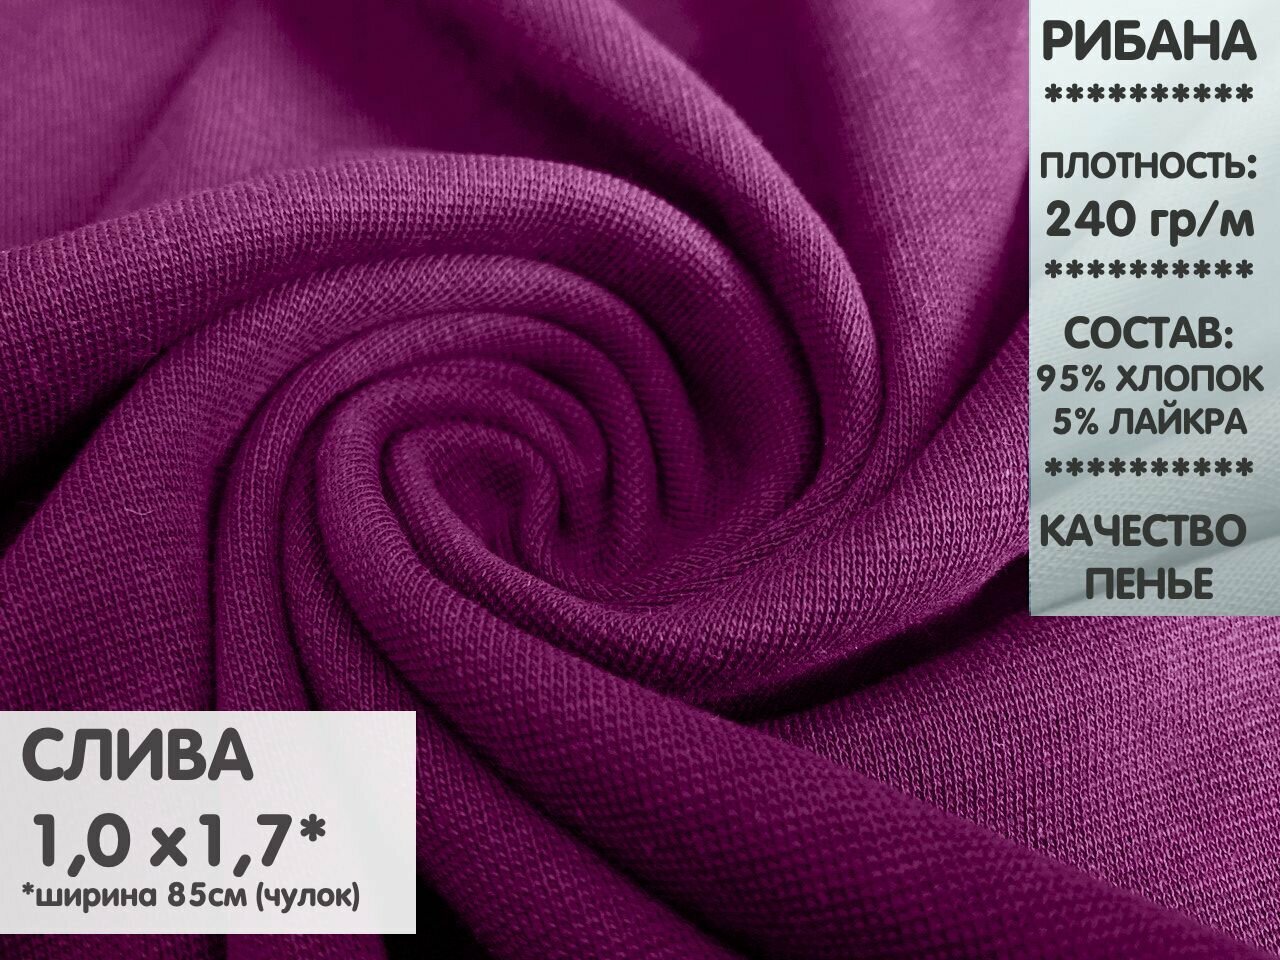 Ткань Рибана с лайкрой, цвет Слива, качество Компакт Пенье